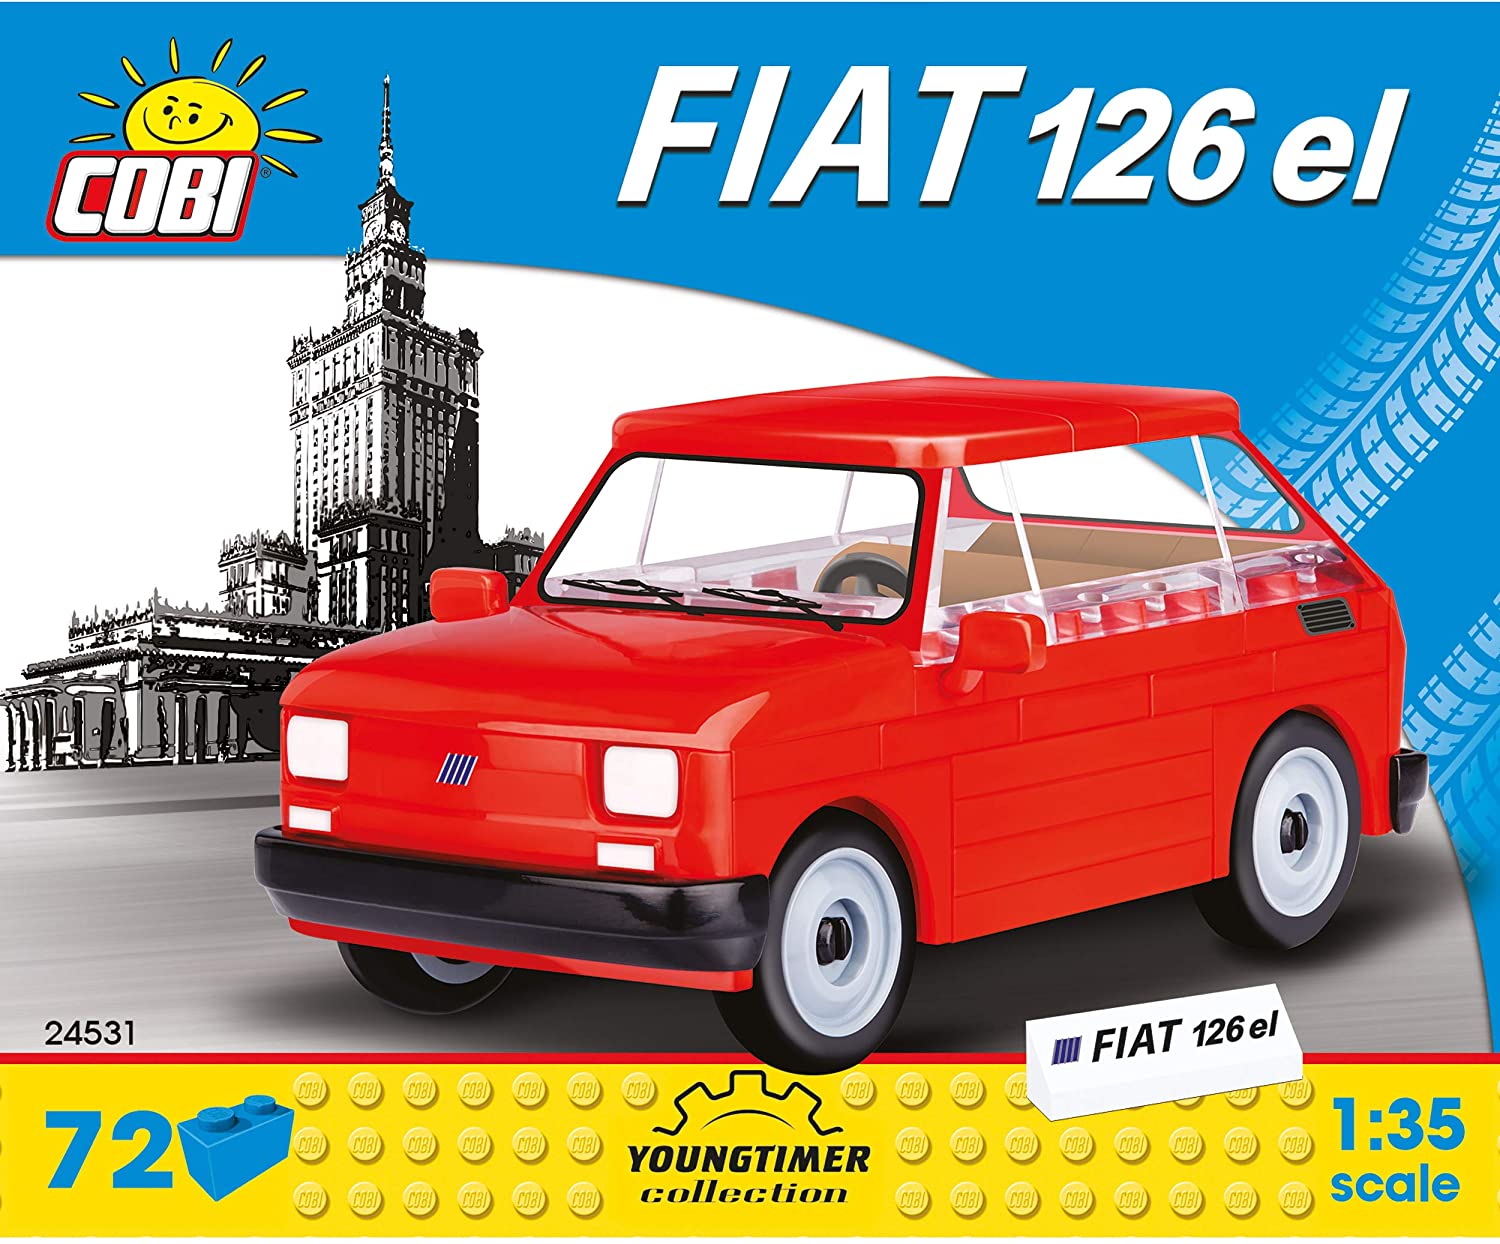 Cobi 24531 Fiat 126 El 1:35 Youngtimer Collection, Model Of A Retro Car, 72